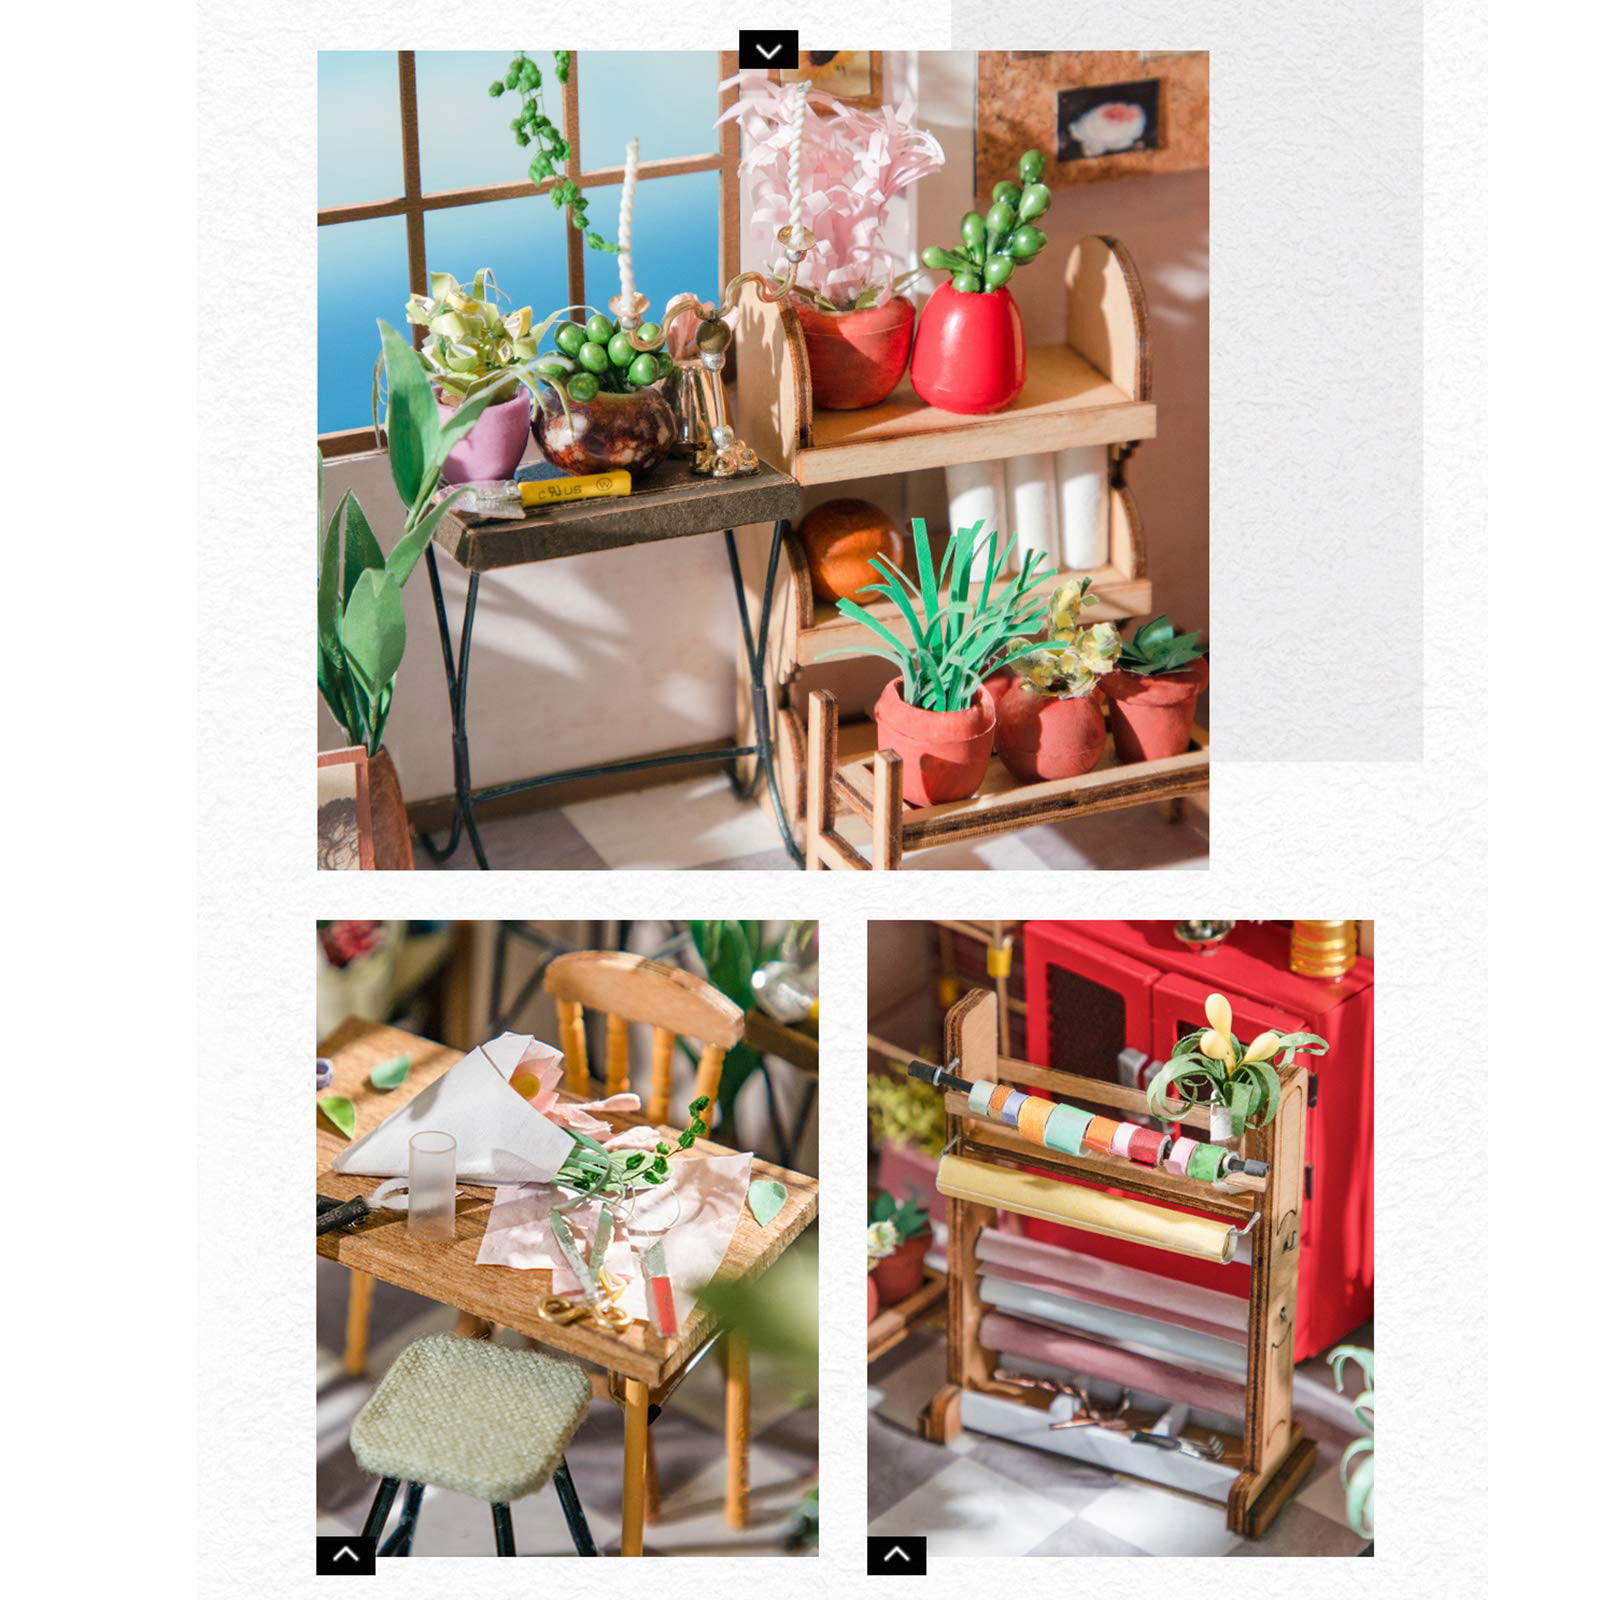 Maison miniature à construire Robotime Emily's Flower Shop